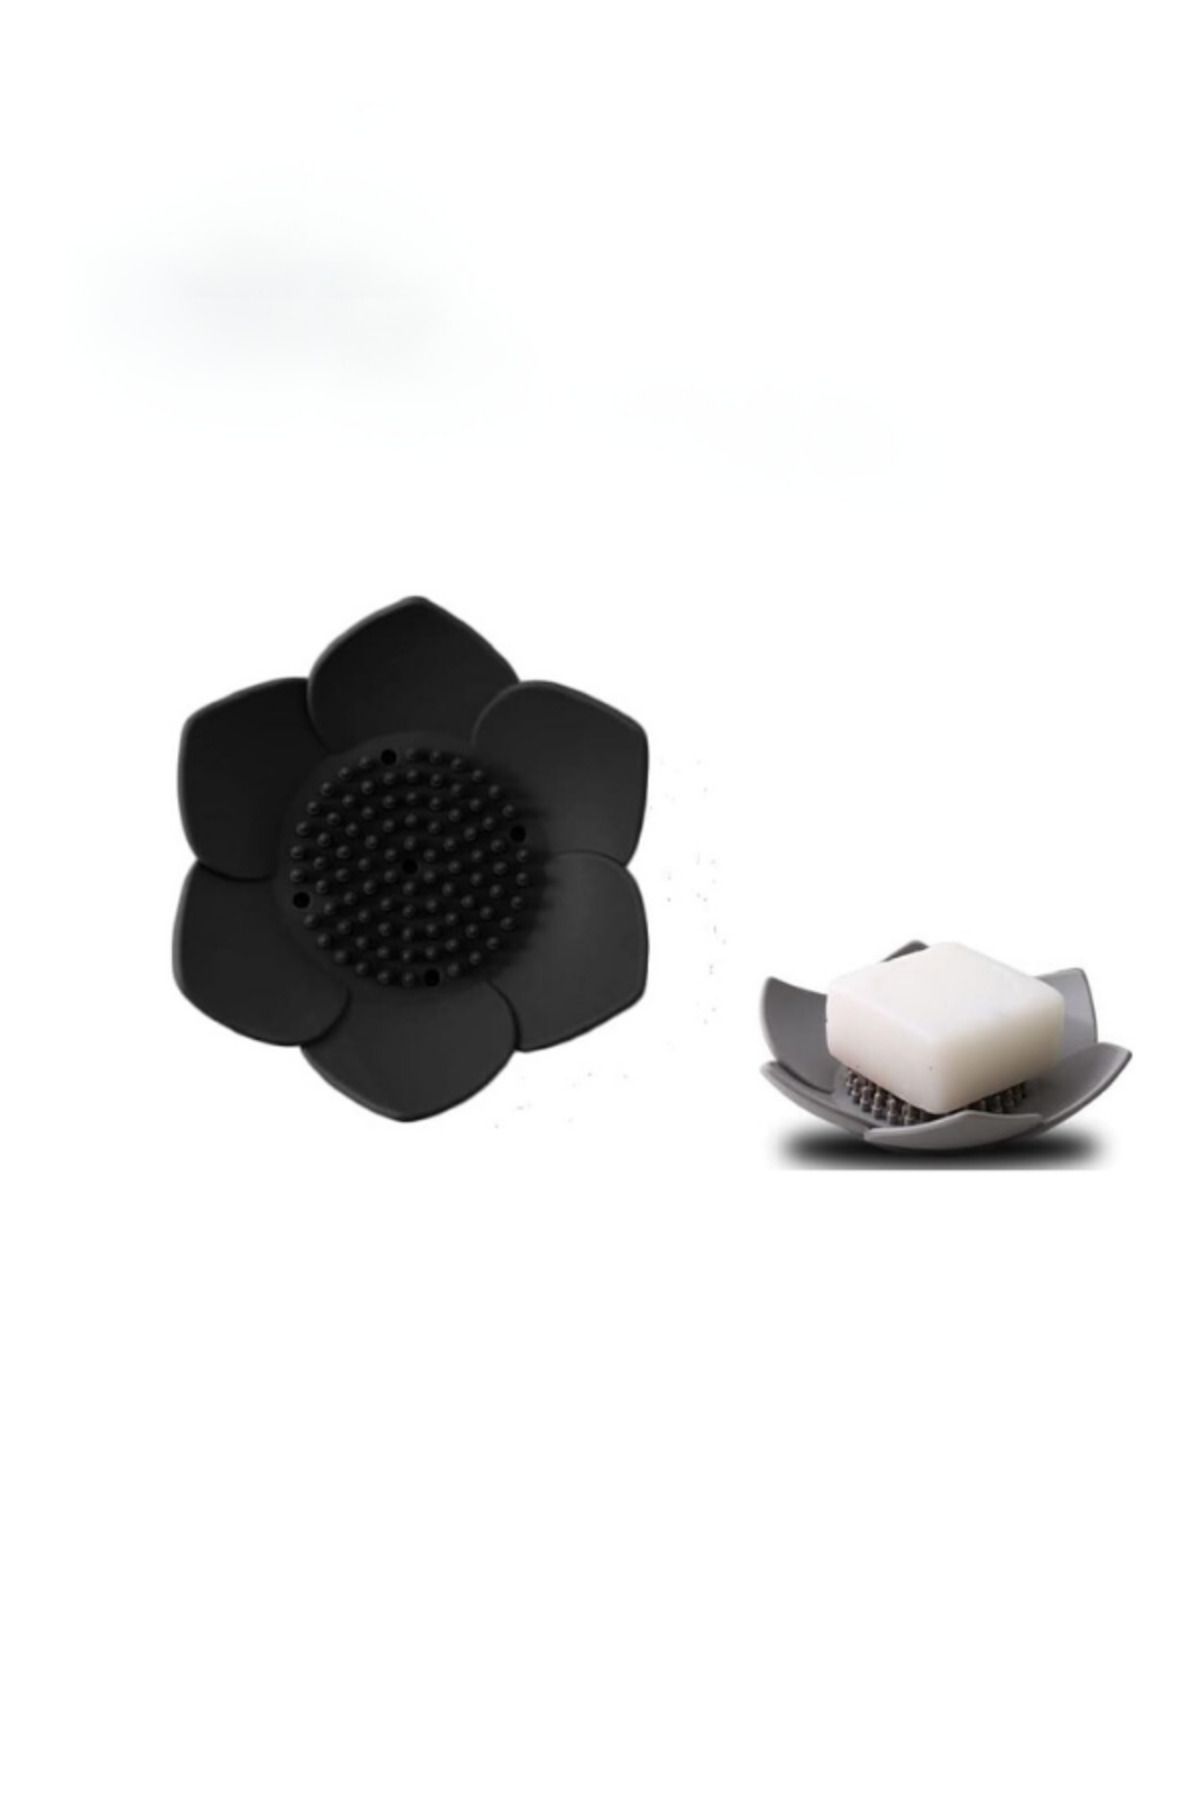 omilife Lotus Desenli Sabun Ve Sünger Tutacağı Silikon (SİYAH) Su Giderli Lotus Şekilli Şık Katı Sabunluk